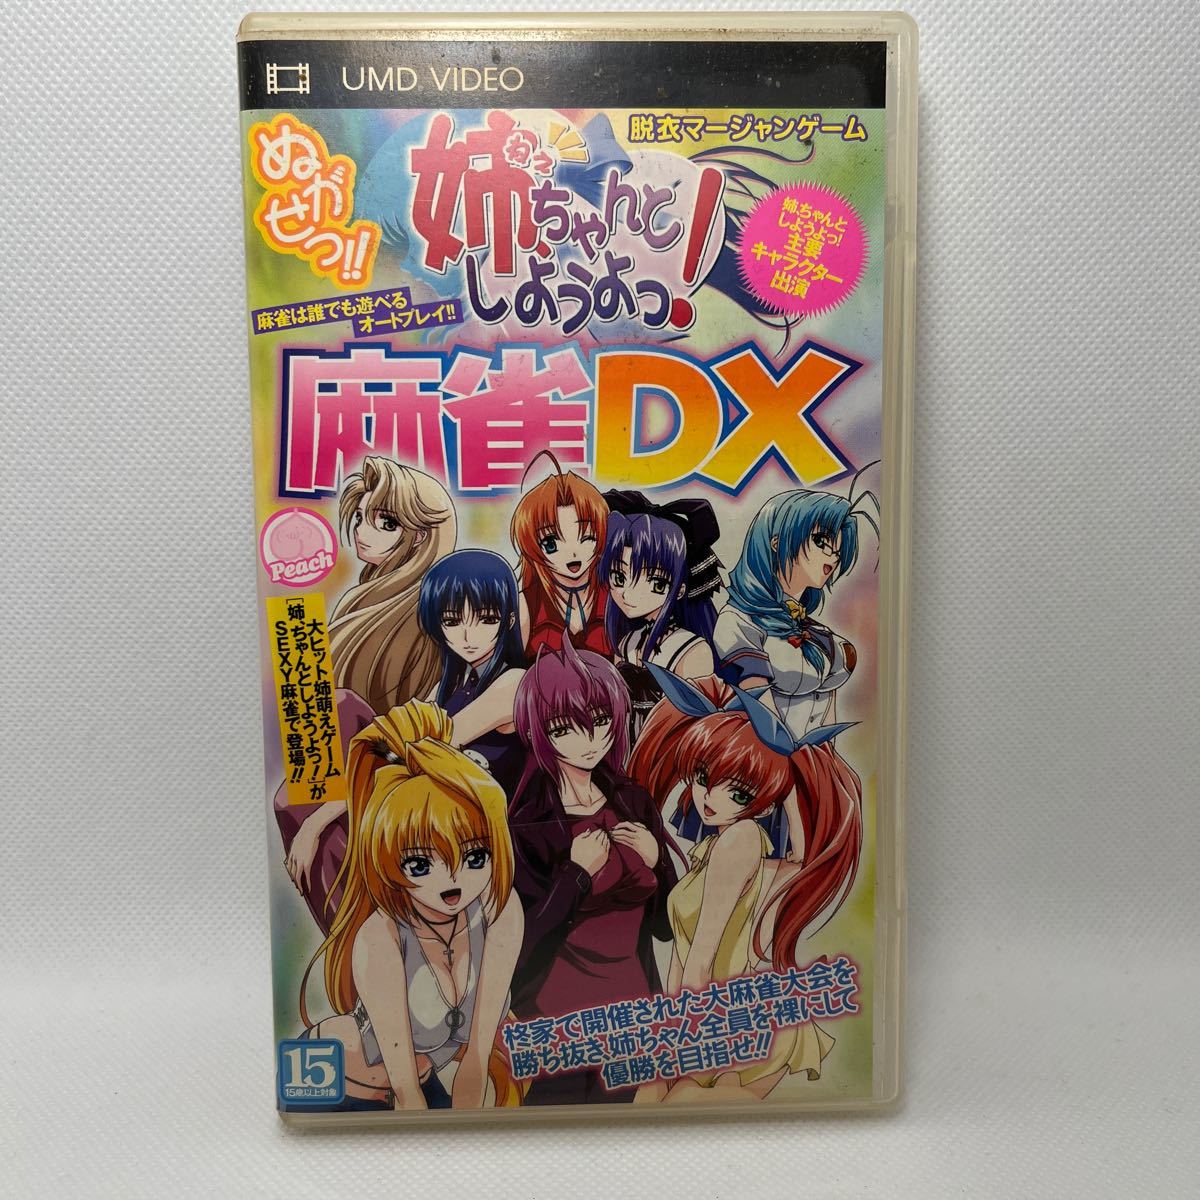 ぬがせっ姉ちゃんとしようよっ!麻雀DX2 PSP - ゲーム